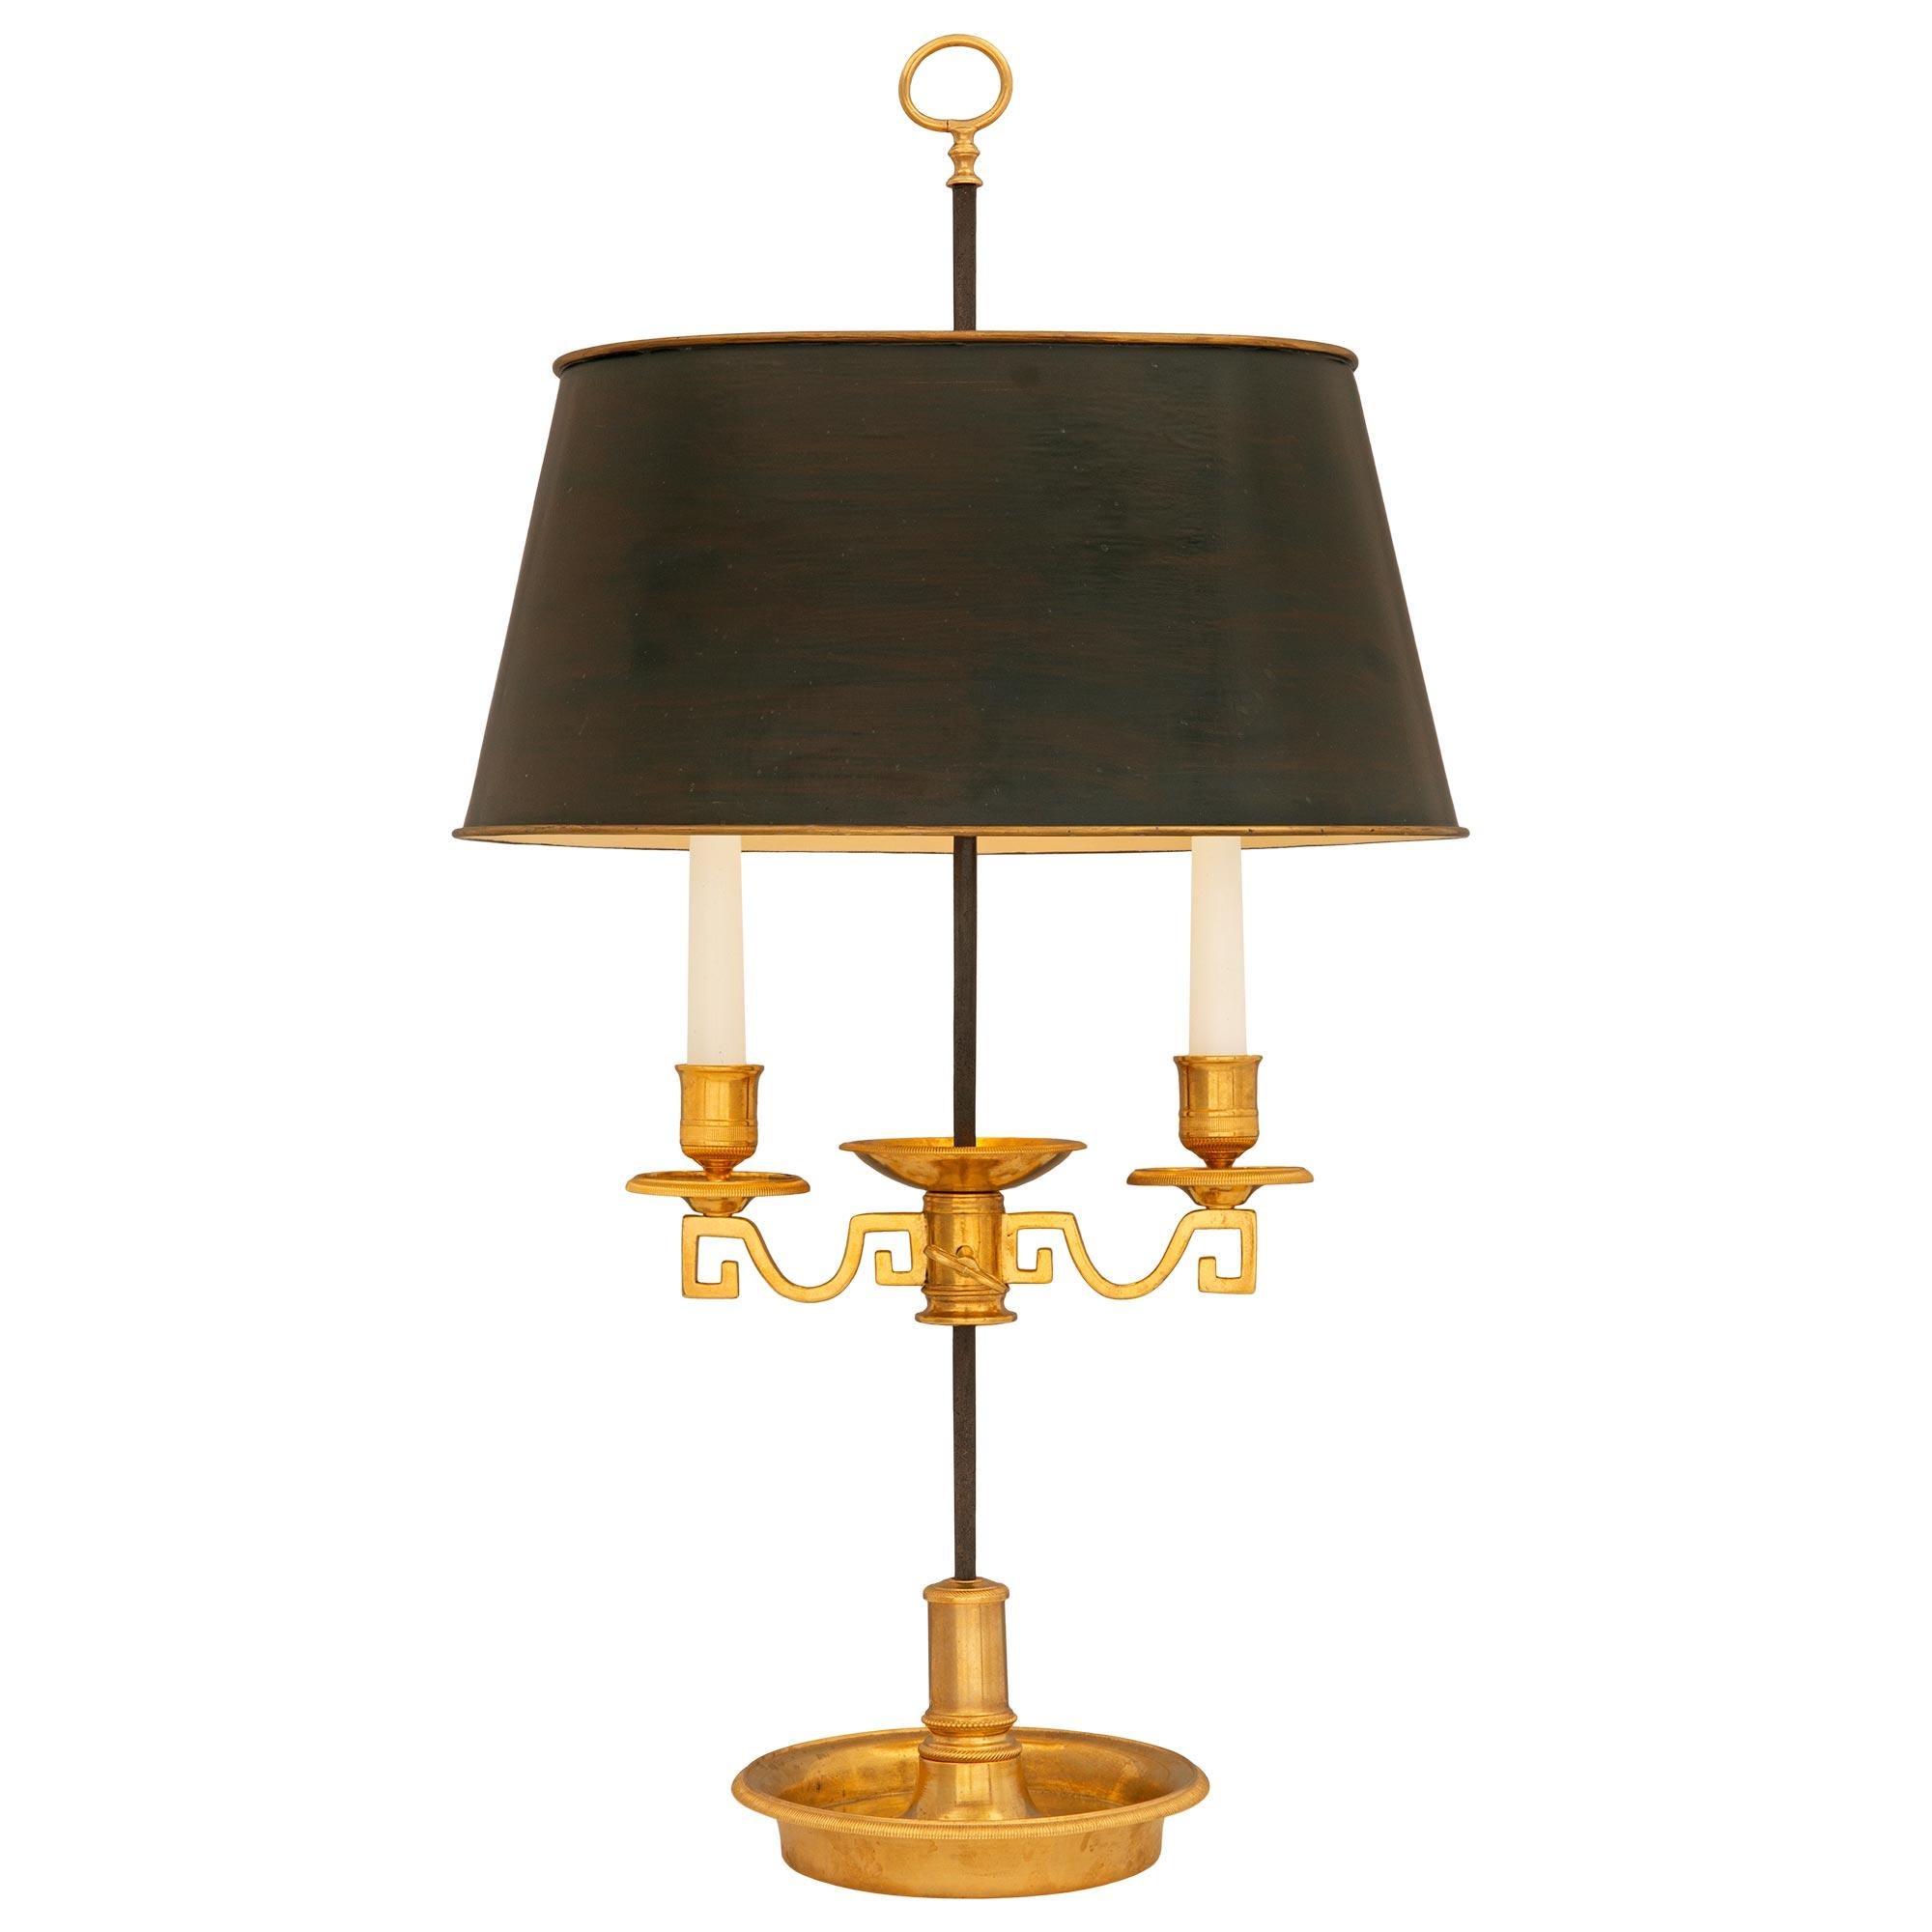 Eine elegante französische Bouillotte-Lampe aus dem 19. Jahrhundert aus Ormolu und Zinn. Die Lampe wird von einer feinen runden Schale mit einem schönen kannelierten Rand und einer schönen leicht gebogenen gesprenkelten zentralen Unterstützung mit